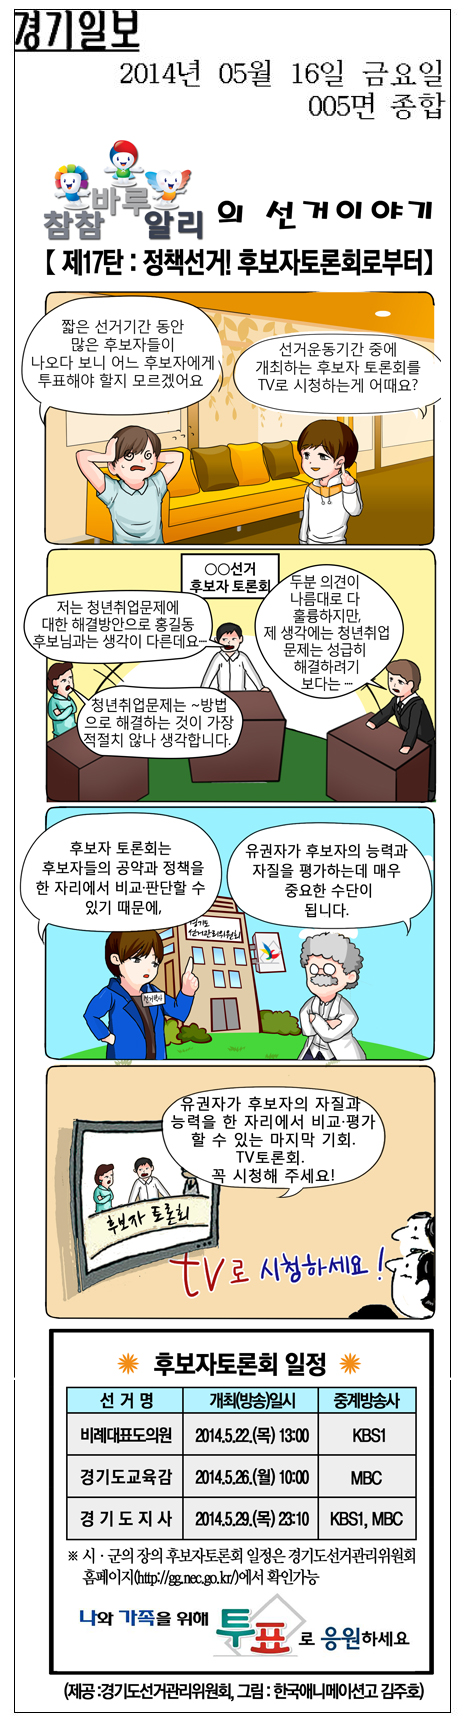 '참참·바루·알리'의 선거이야기 만화 16화